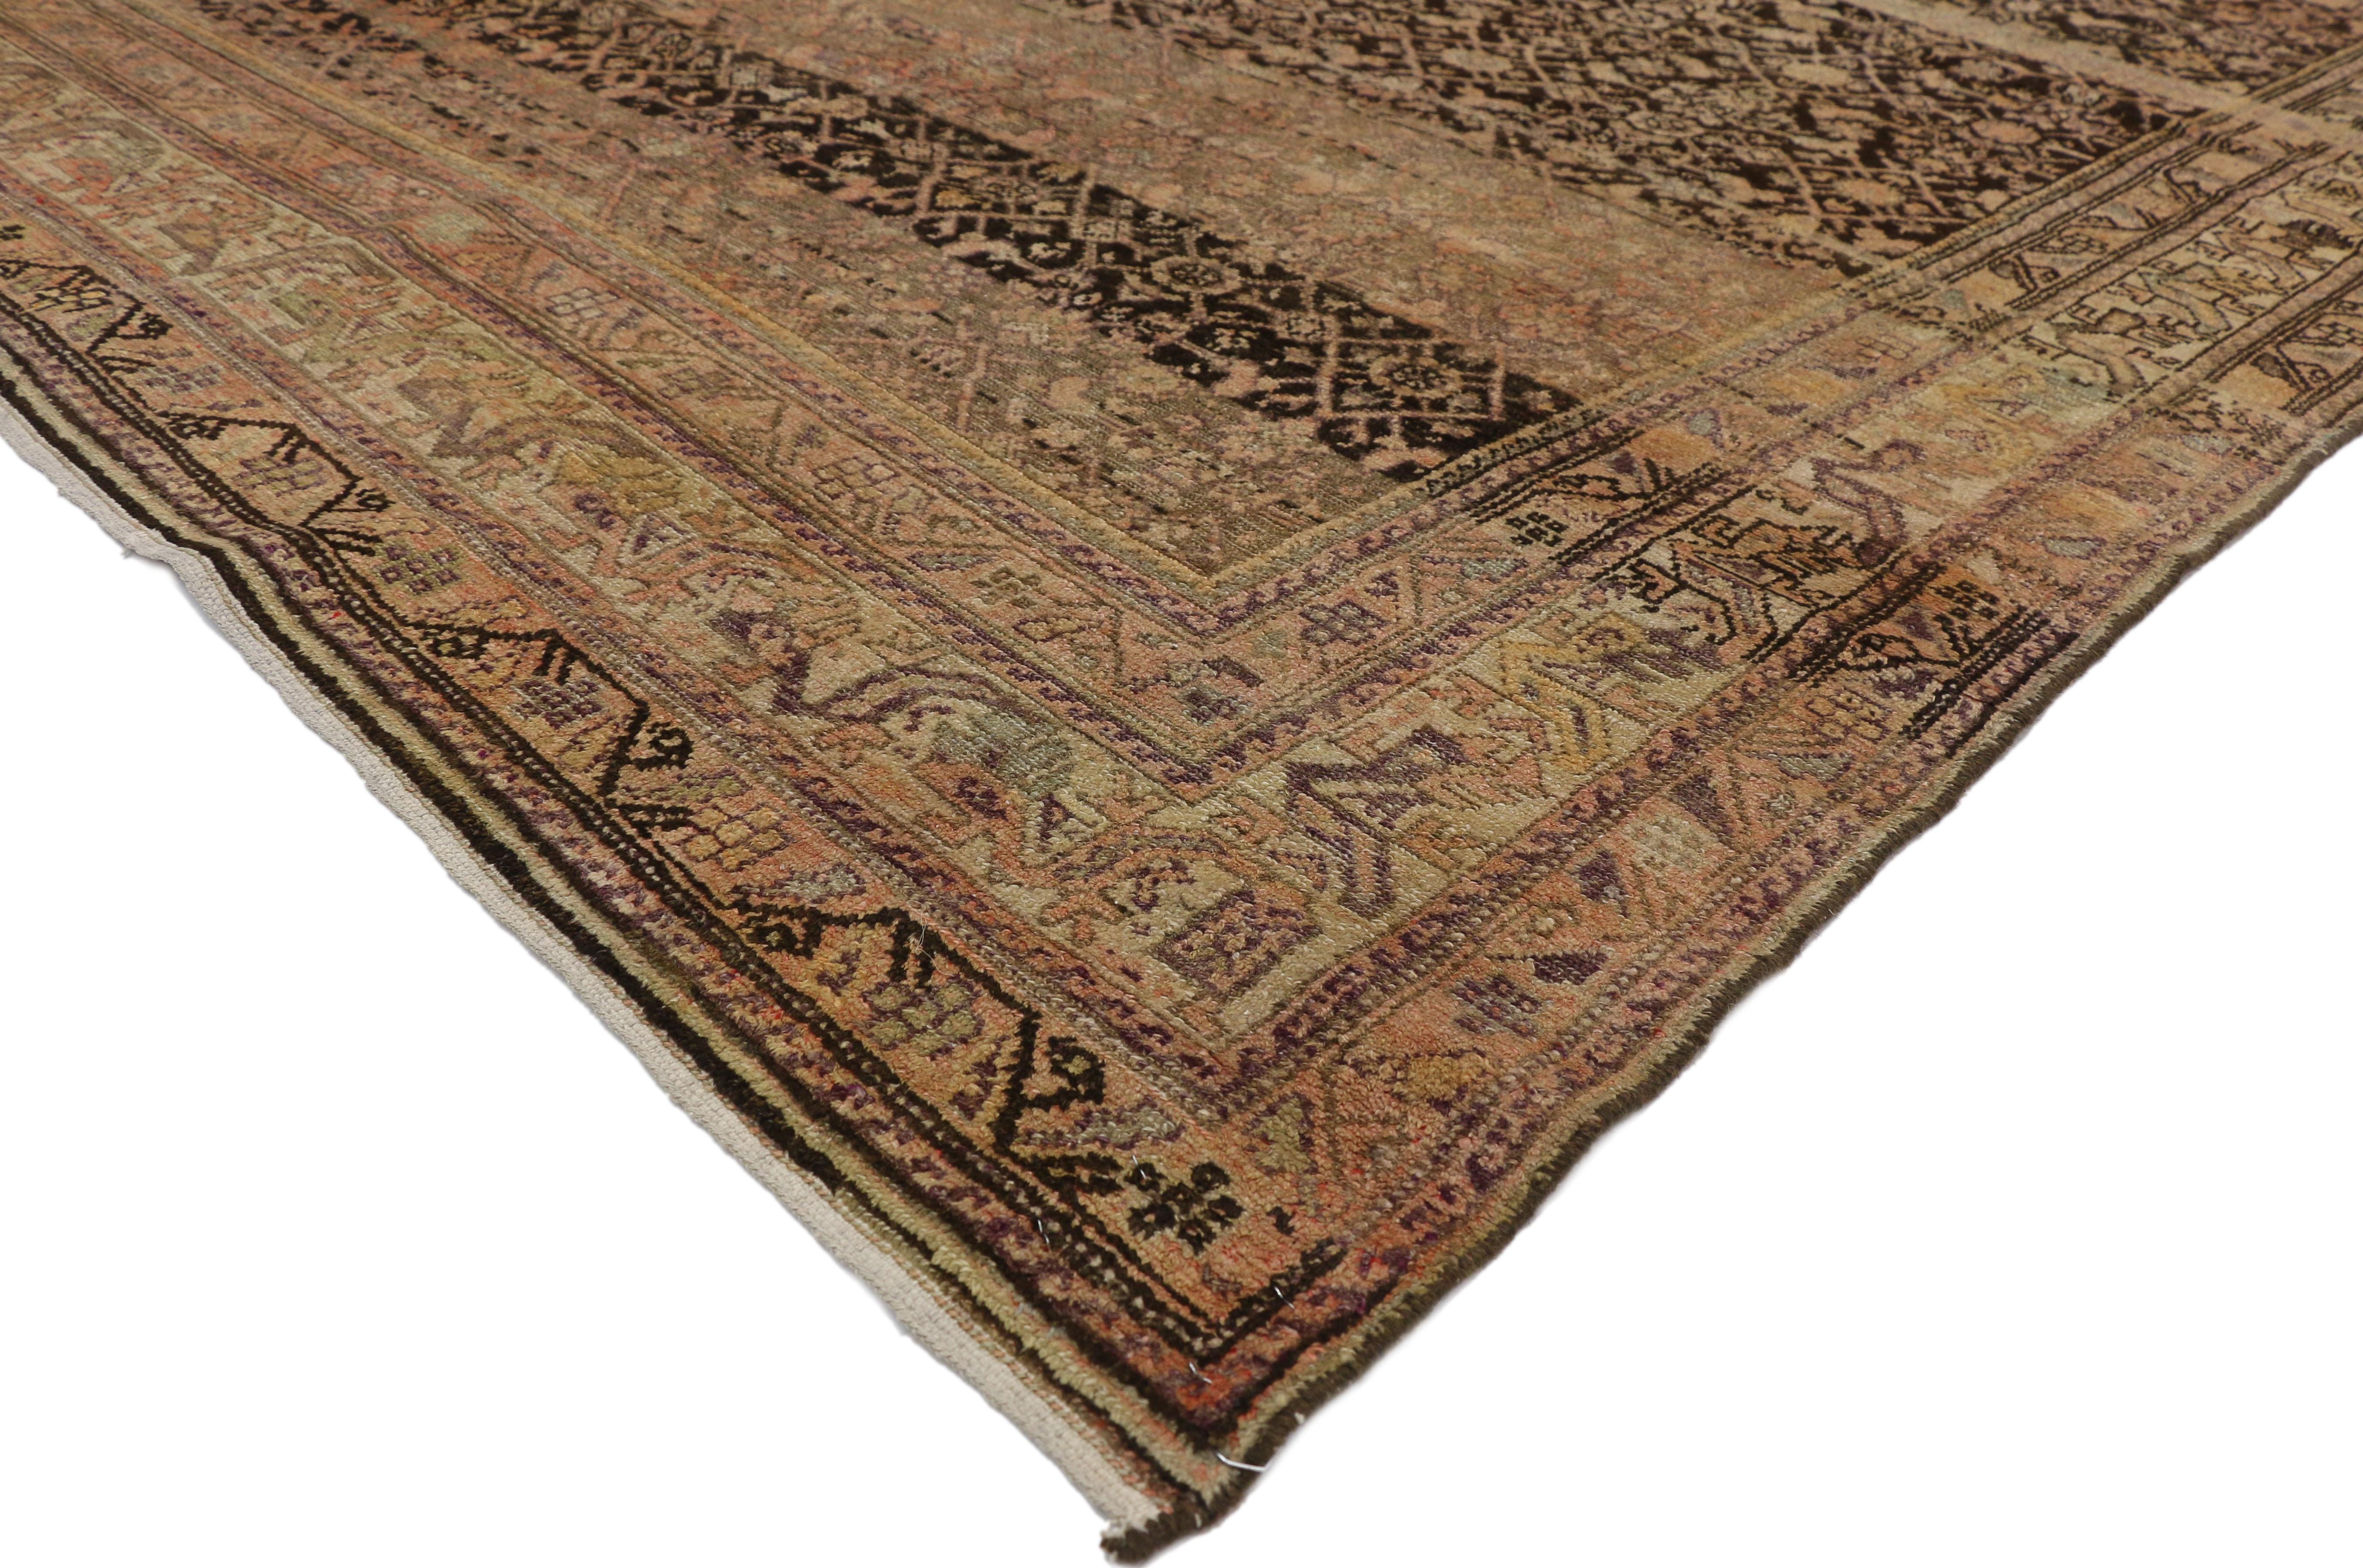 76510 tapis persan ancien Malayer Gallery avec Herati Design, tapis long de salon. Ce tapis galerie Persan Malayer ancien, en laine nouée à la main, présente un motif Herati classique sur toute sa surface. Le motif Herati est l'un des plus répandus